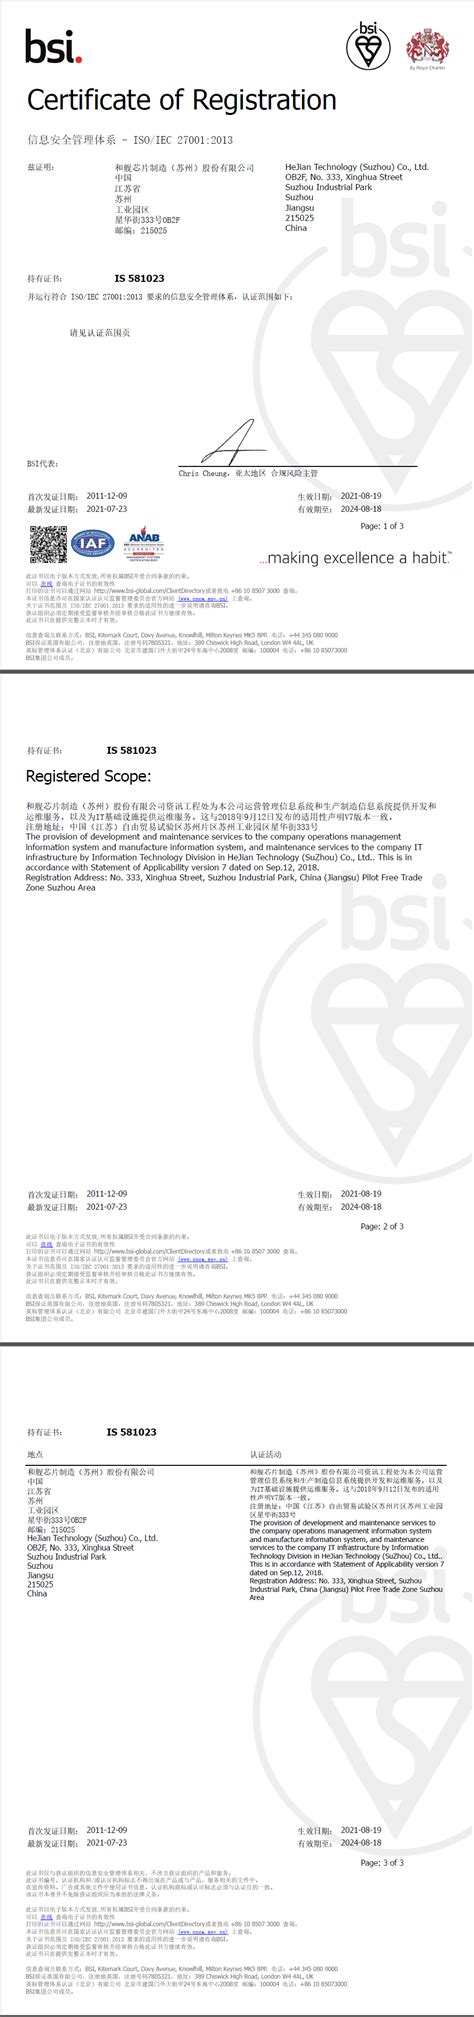 和舰芯片成功取得ISO 27001:2013审核证书